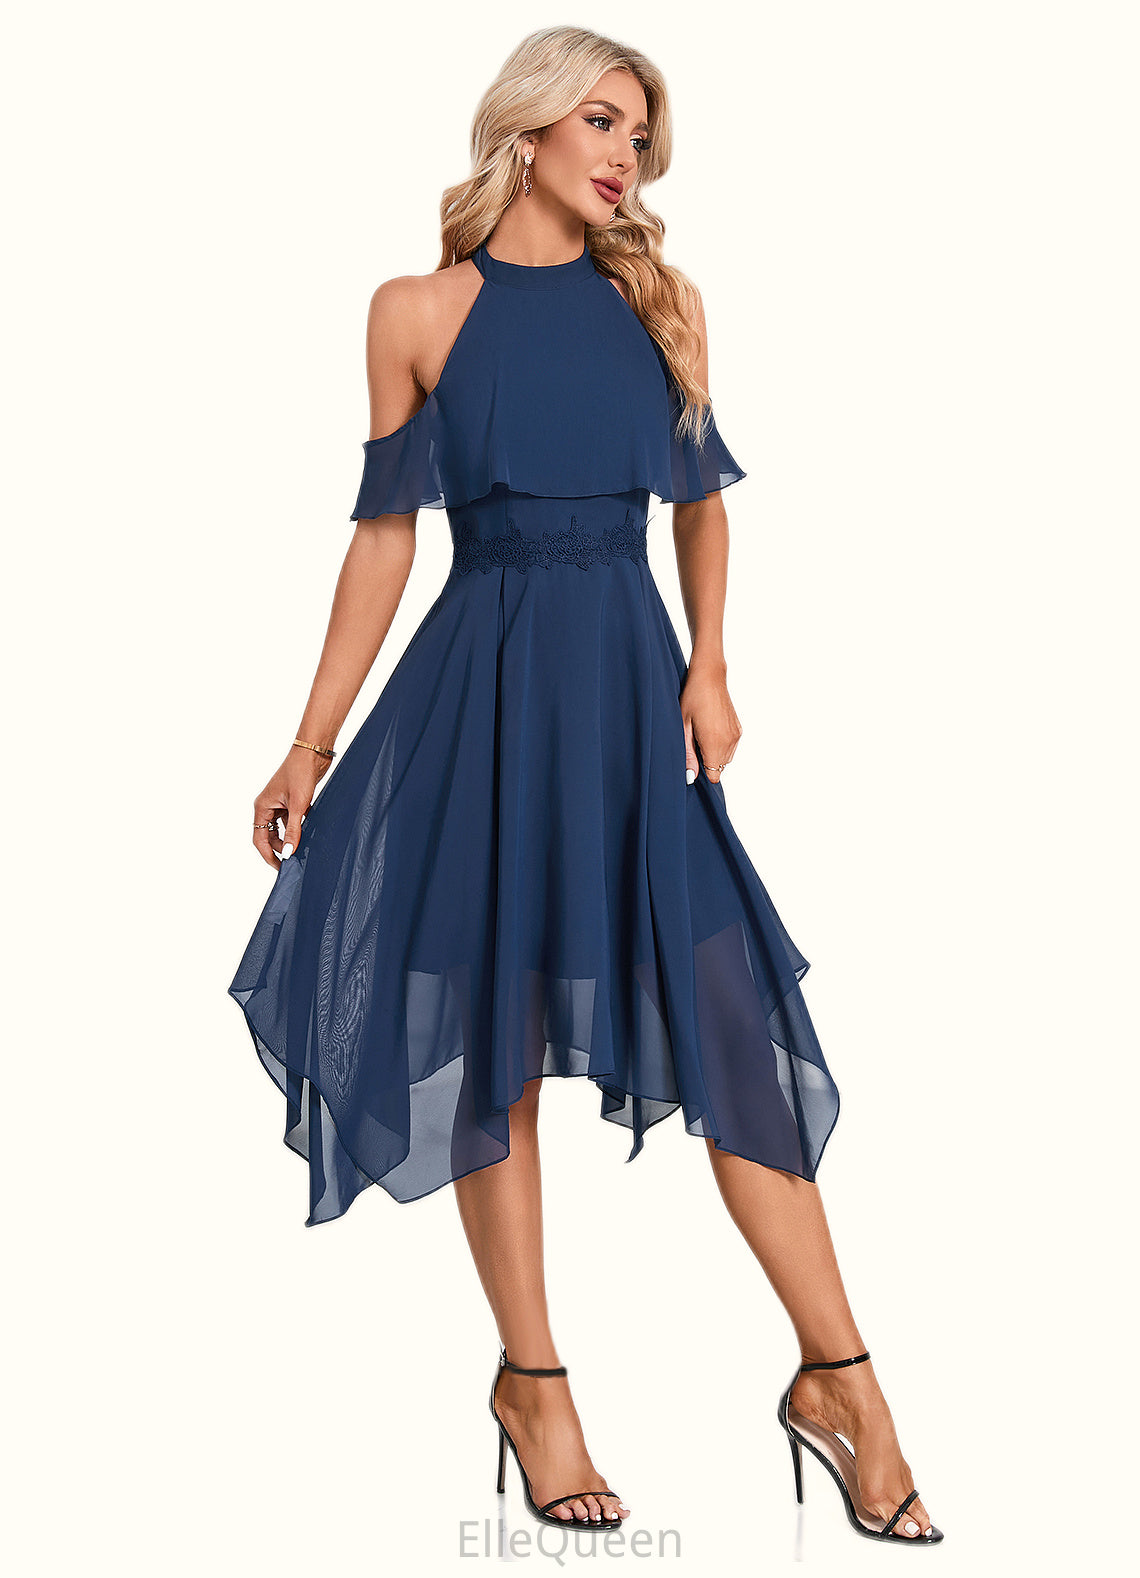 Alondra Appliques Lace Off the Shoulder Elegant A-line Chiffon Asymmetrical Dresses DGP0022489